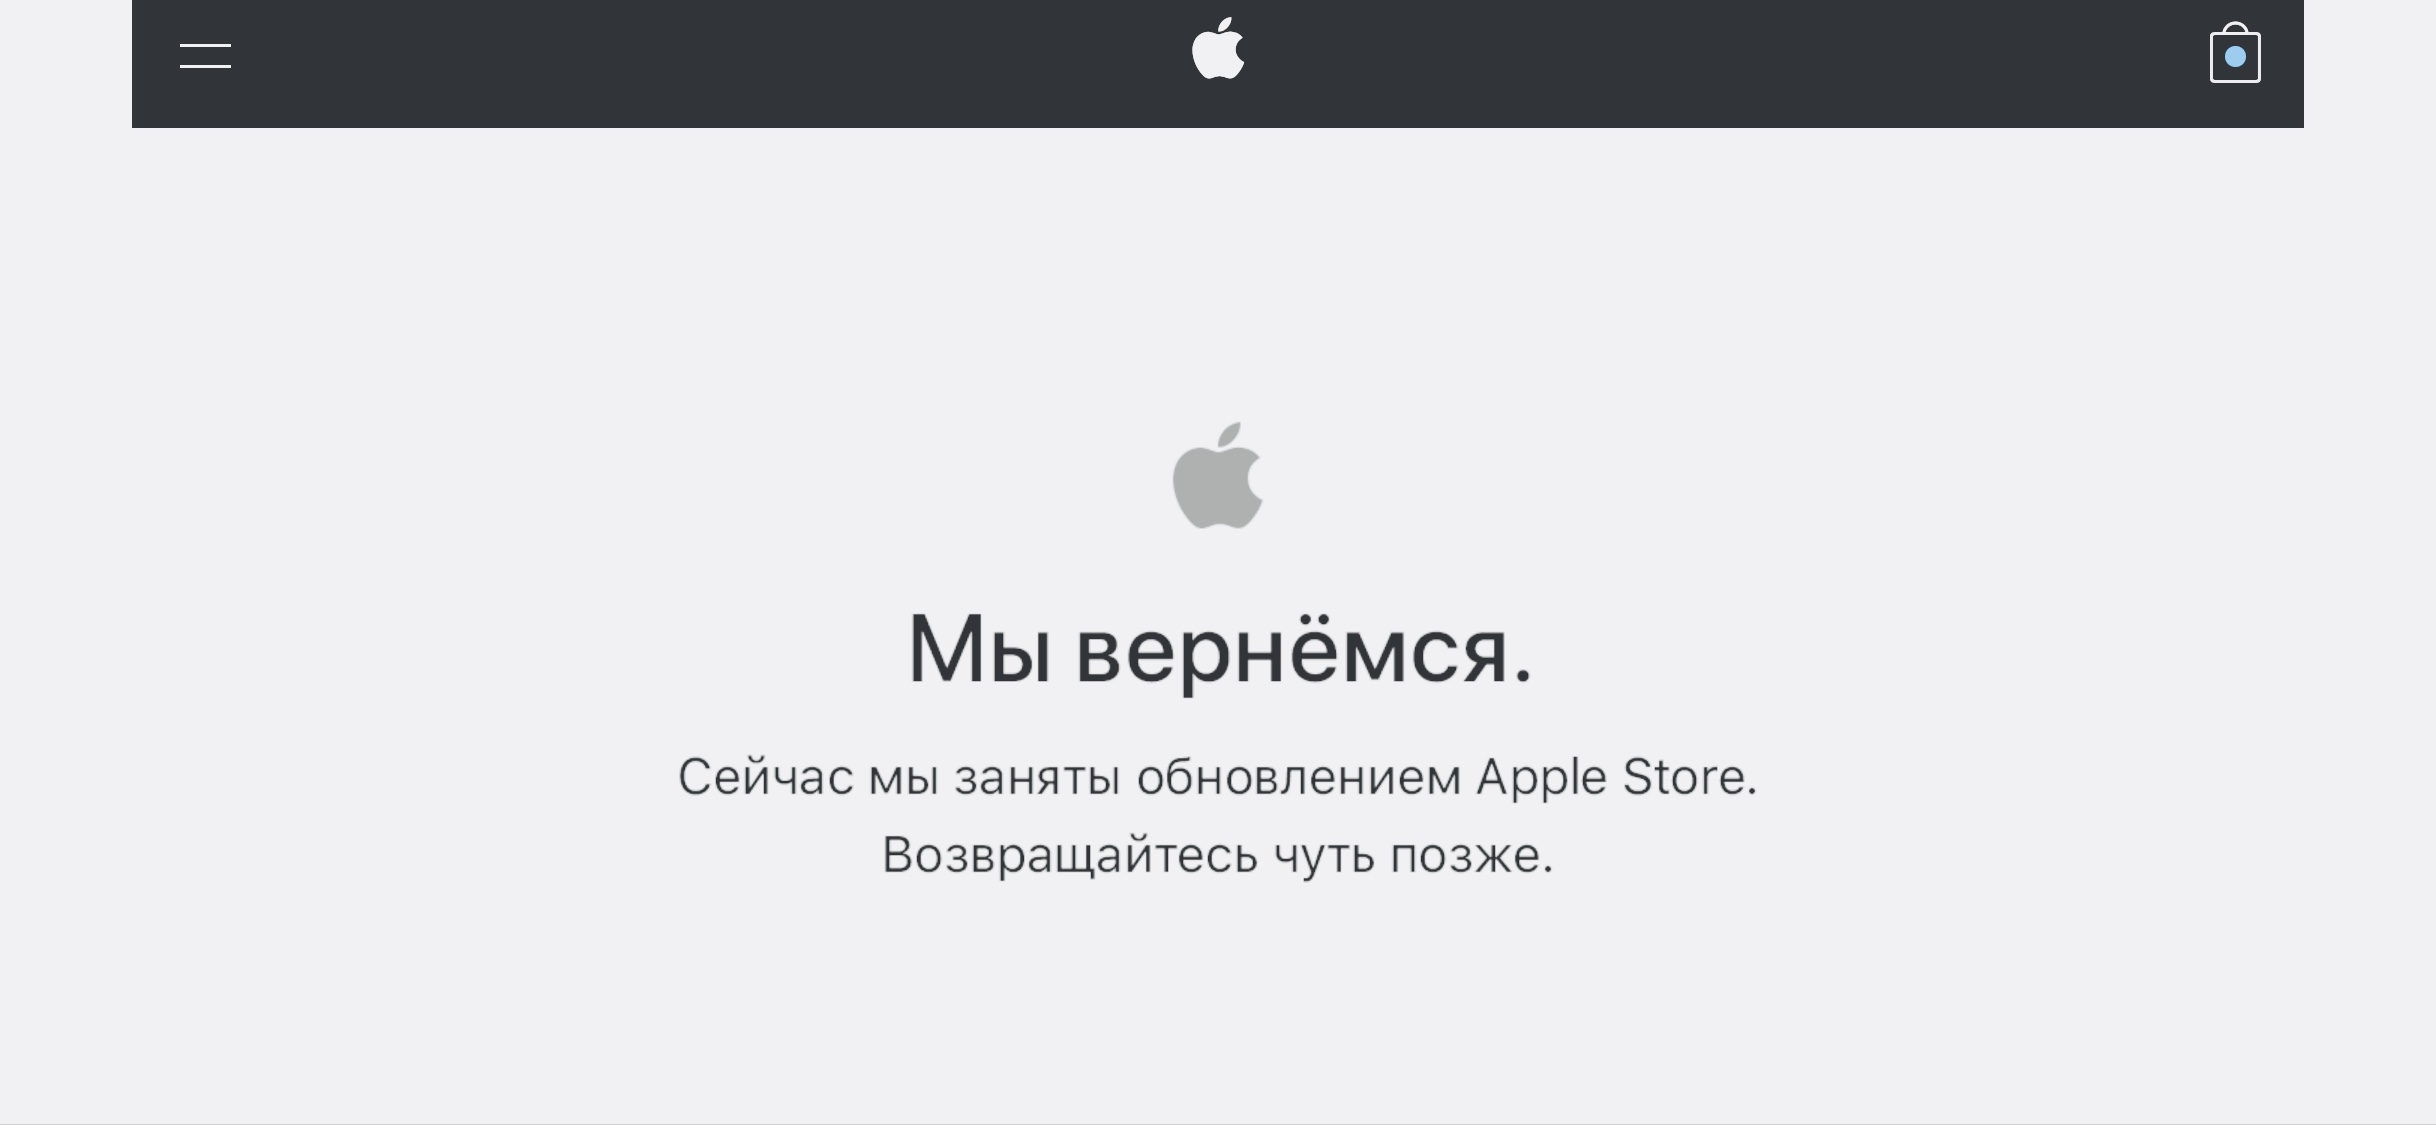 Онлайн-магазин Apple закрылся на обновление ассортимента